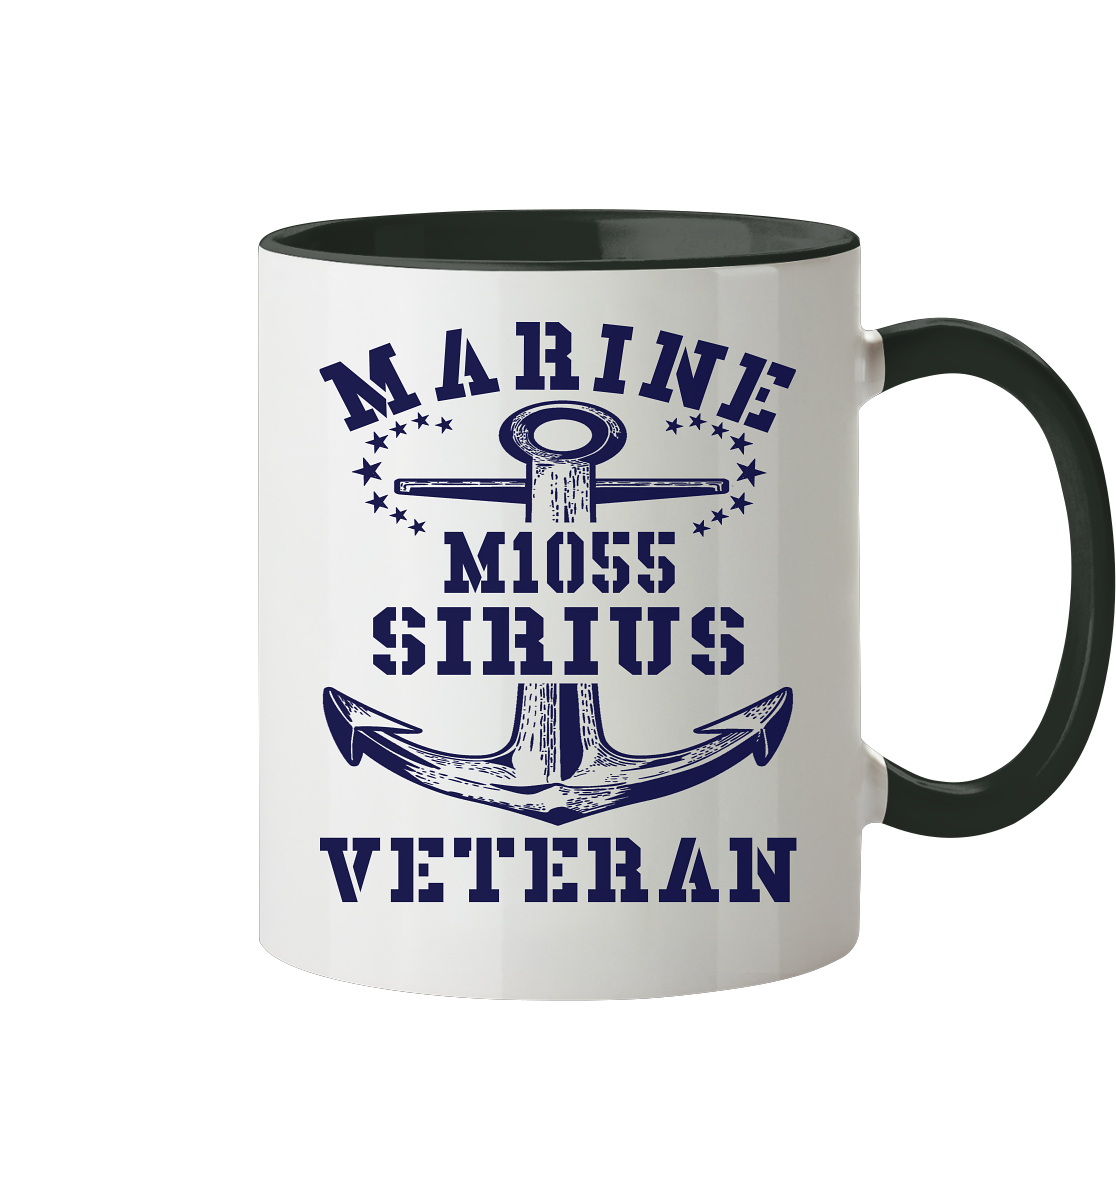 SM-Boot M1055 SIRIUS Marine Veteran - Tasse zweifarbig